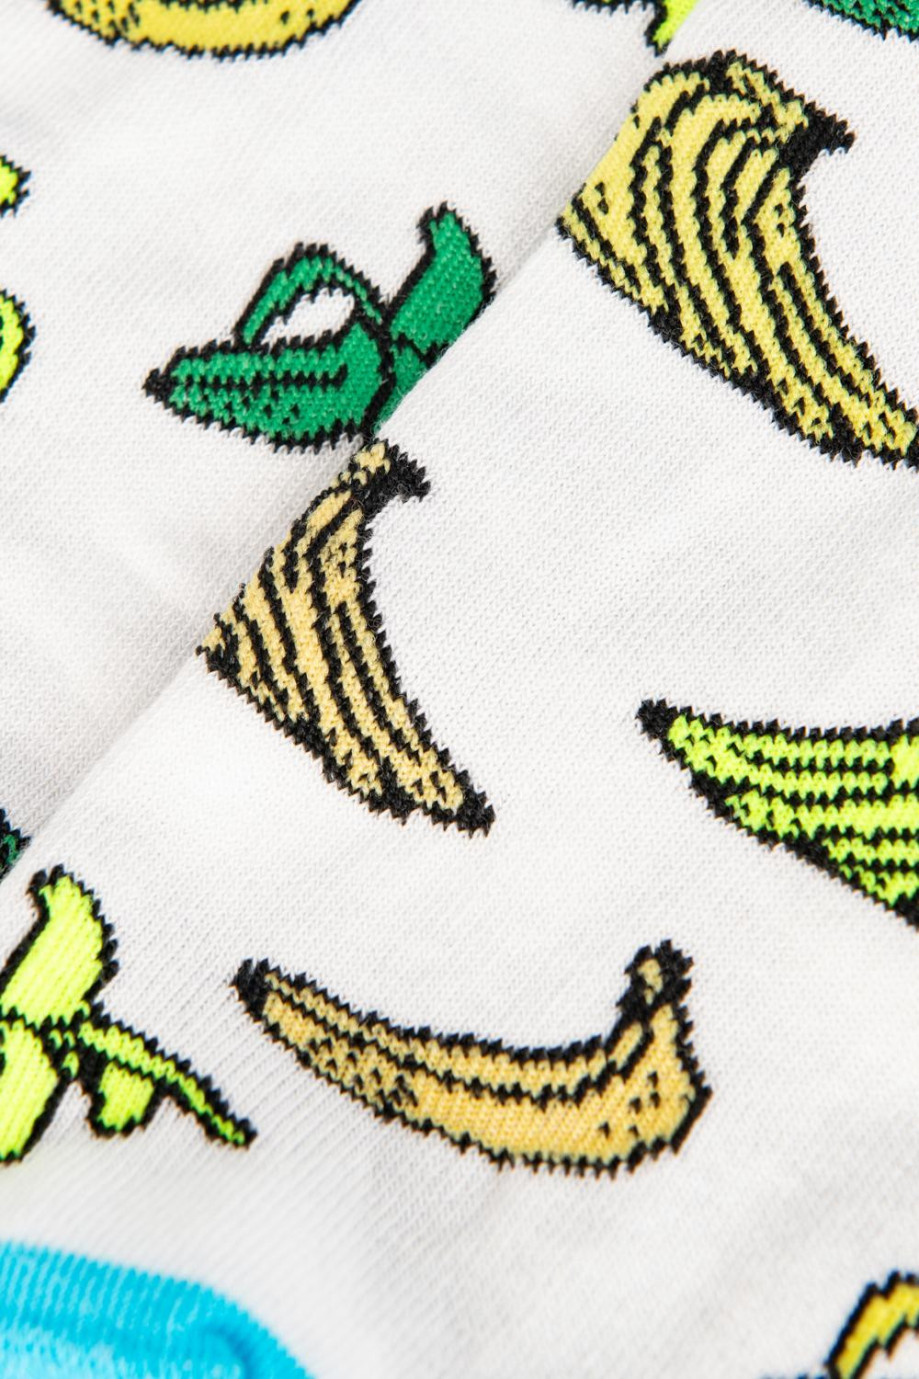 Medias tobilleras unicolores con diseños de bananas coloridas